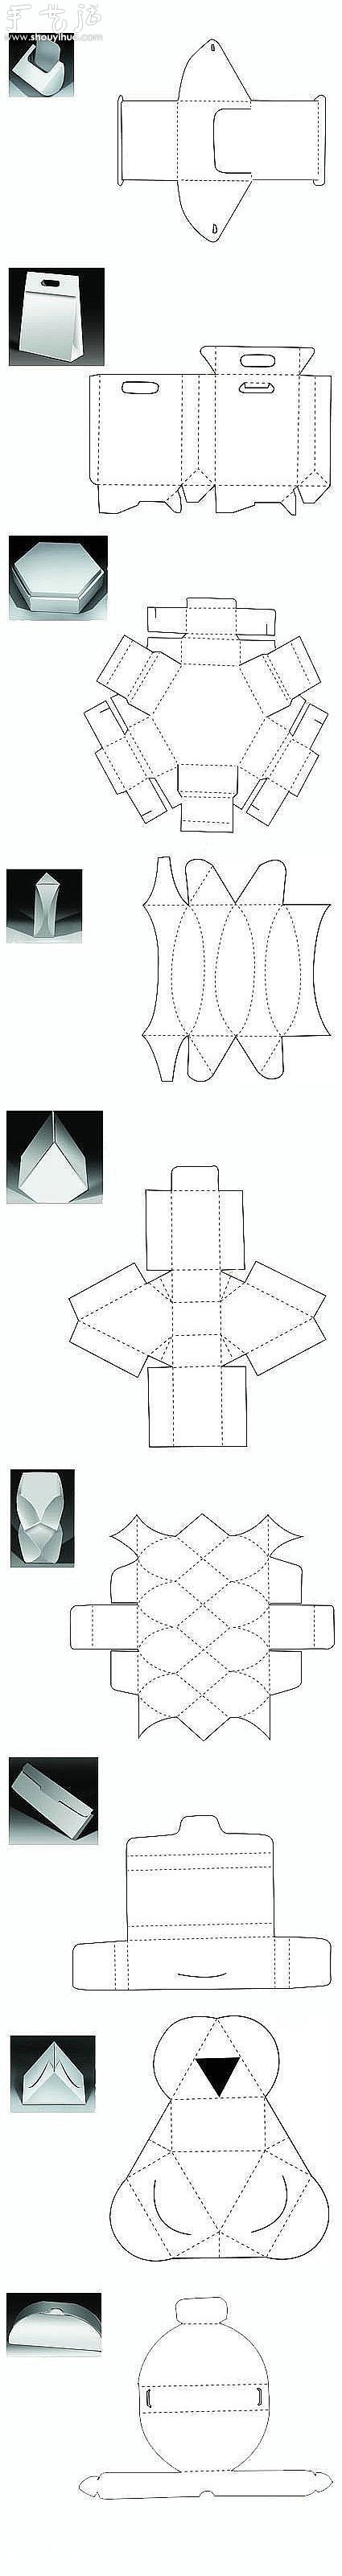 纸质包装盒的折法线框图- www.aizhezhi.com